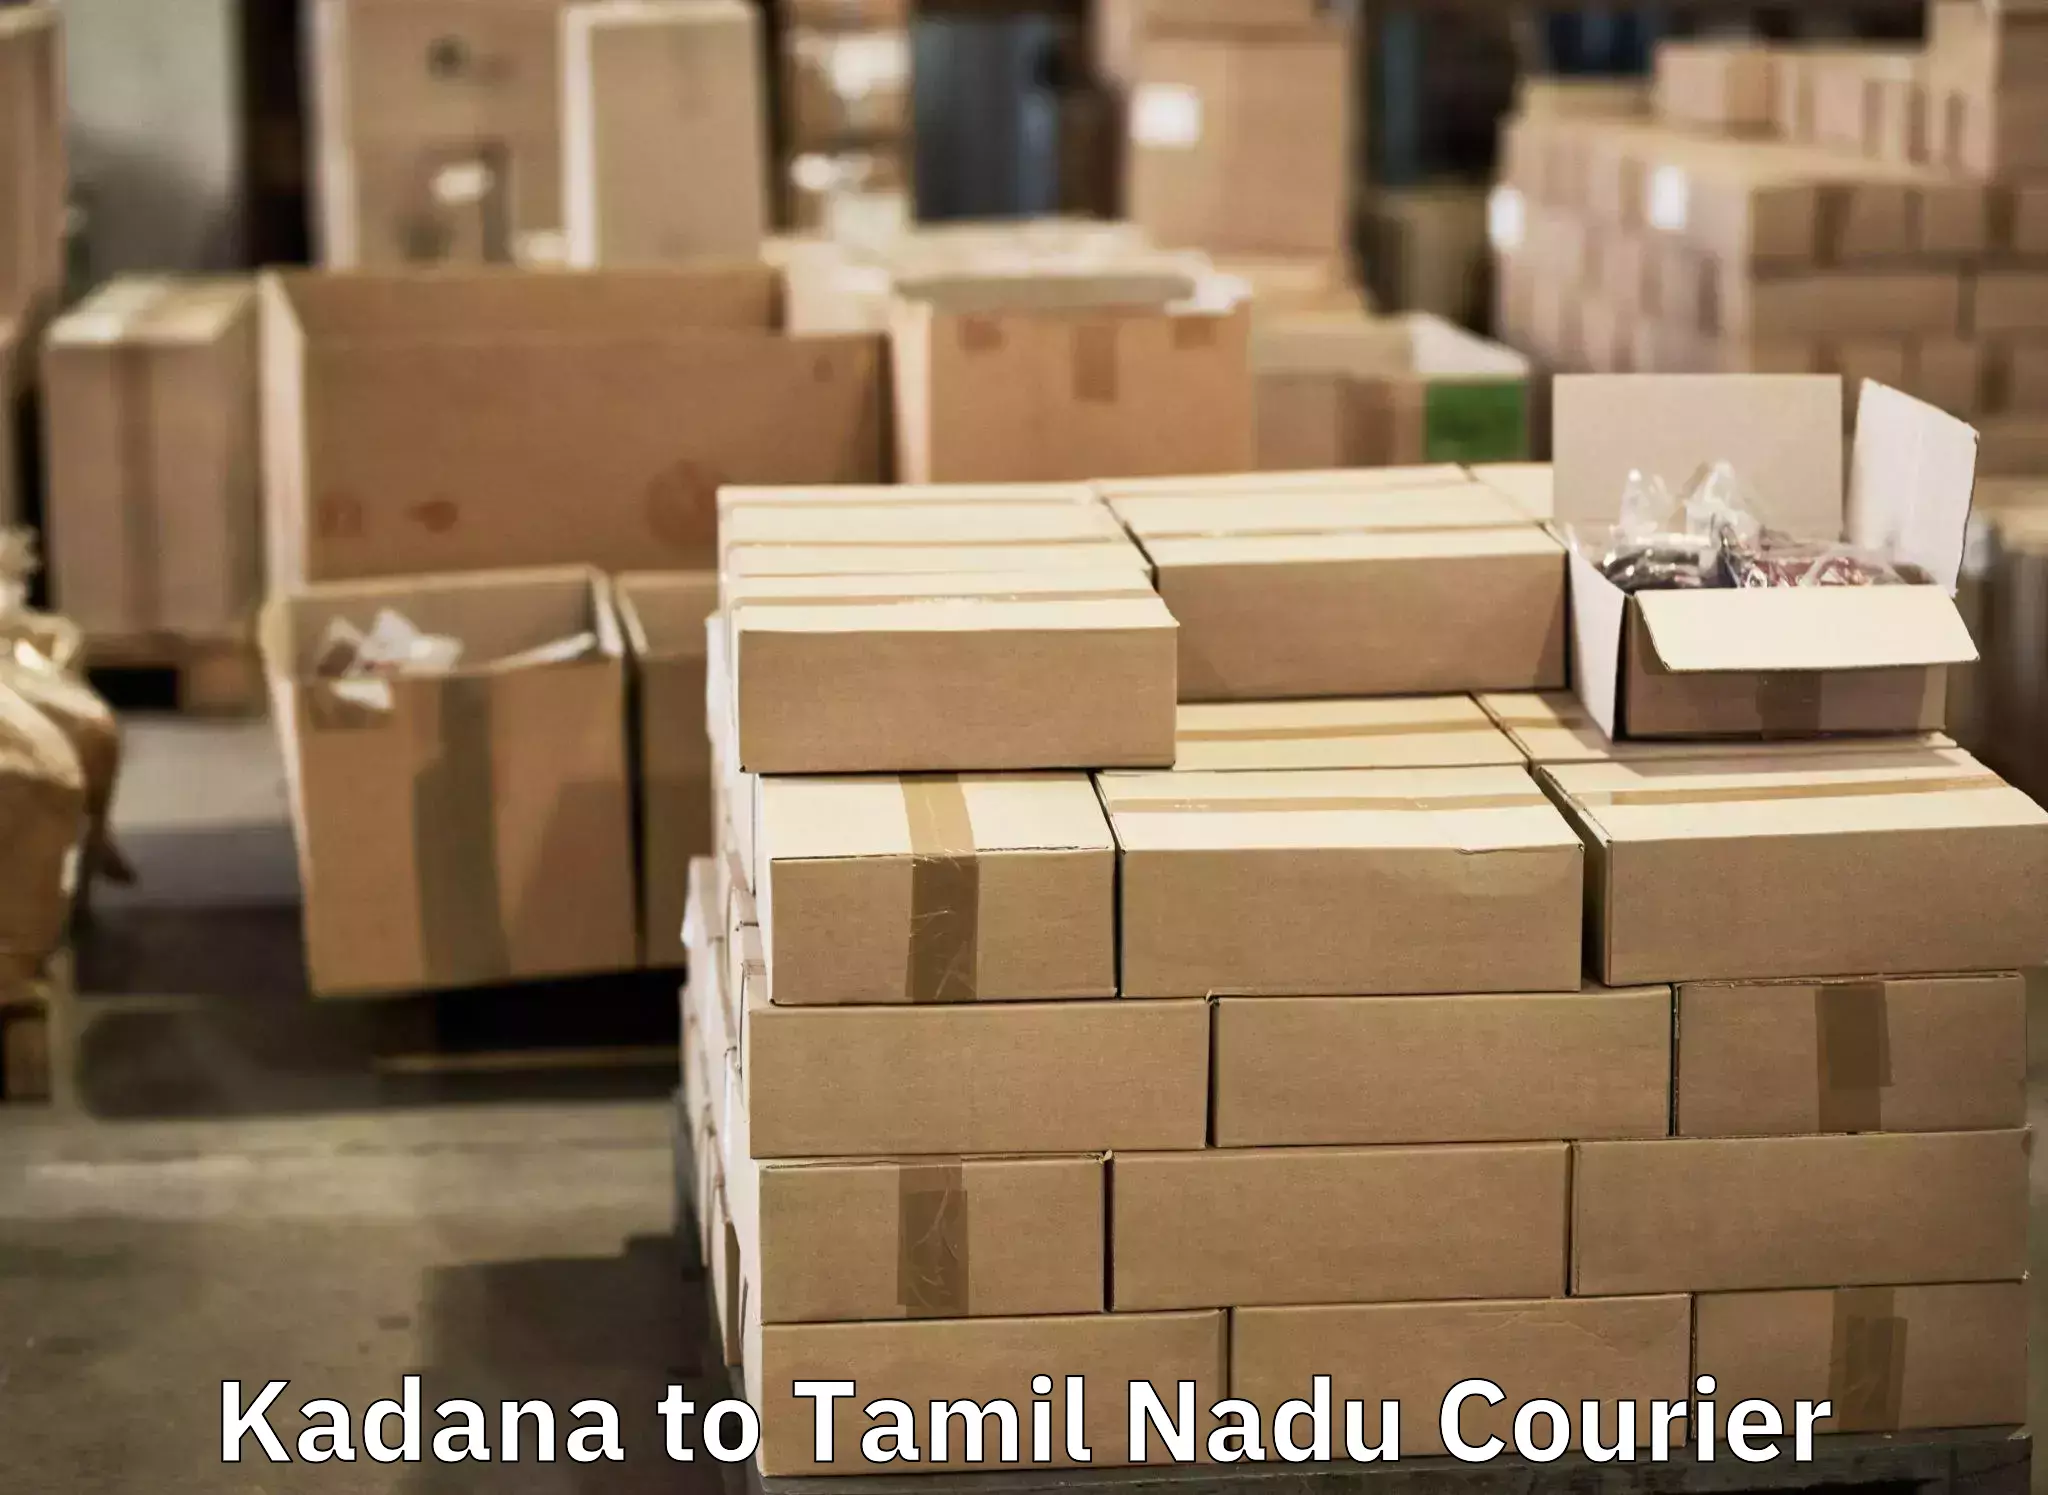 Express luggage delivery Kadana to Thiruvadanai